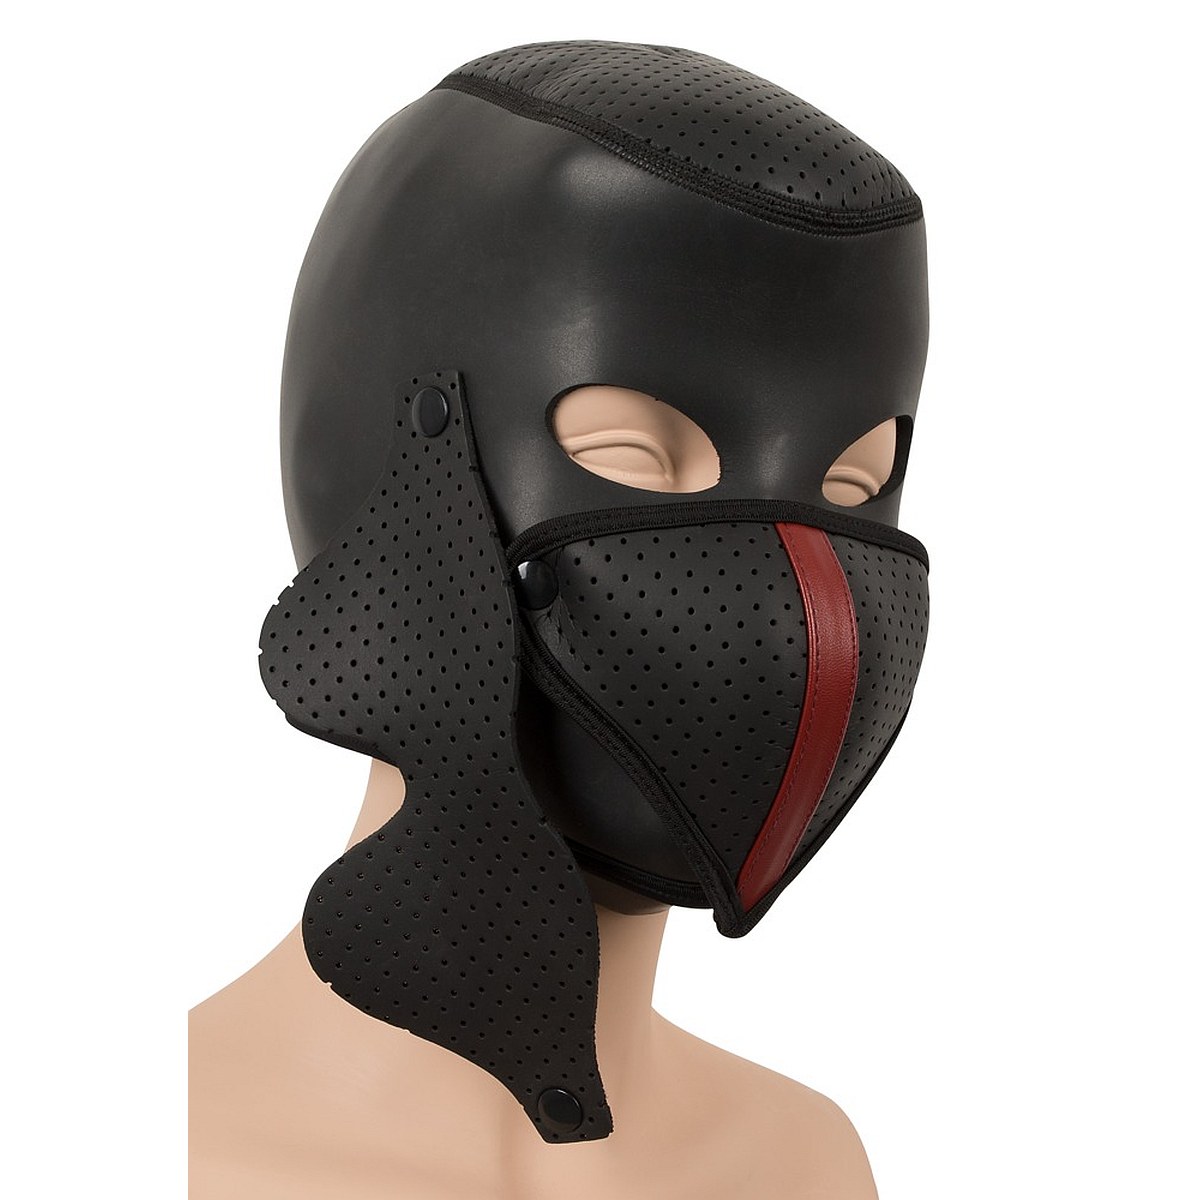 Kopfhaube Maske Augen+Mund elastisch Elasthan stretch shiny oder Wetlook Farben 